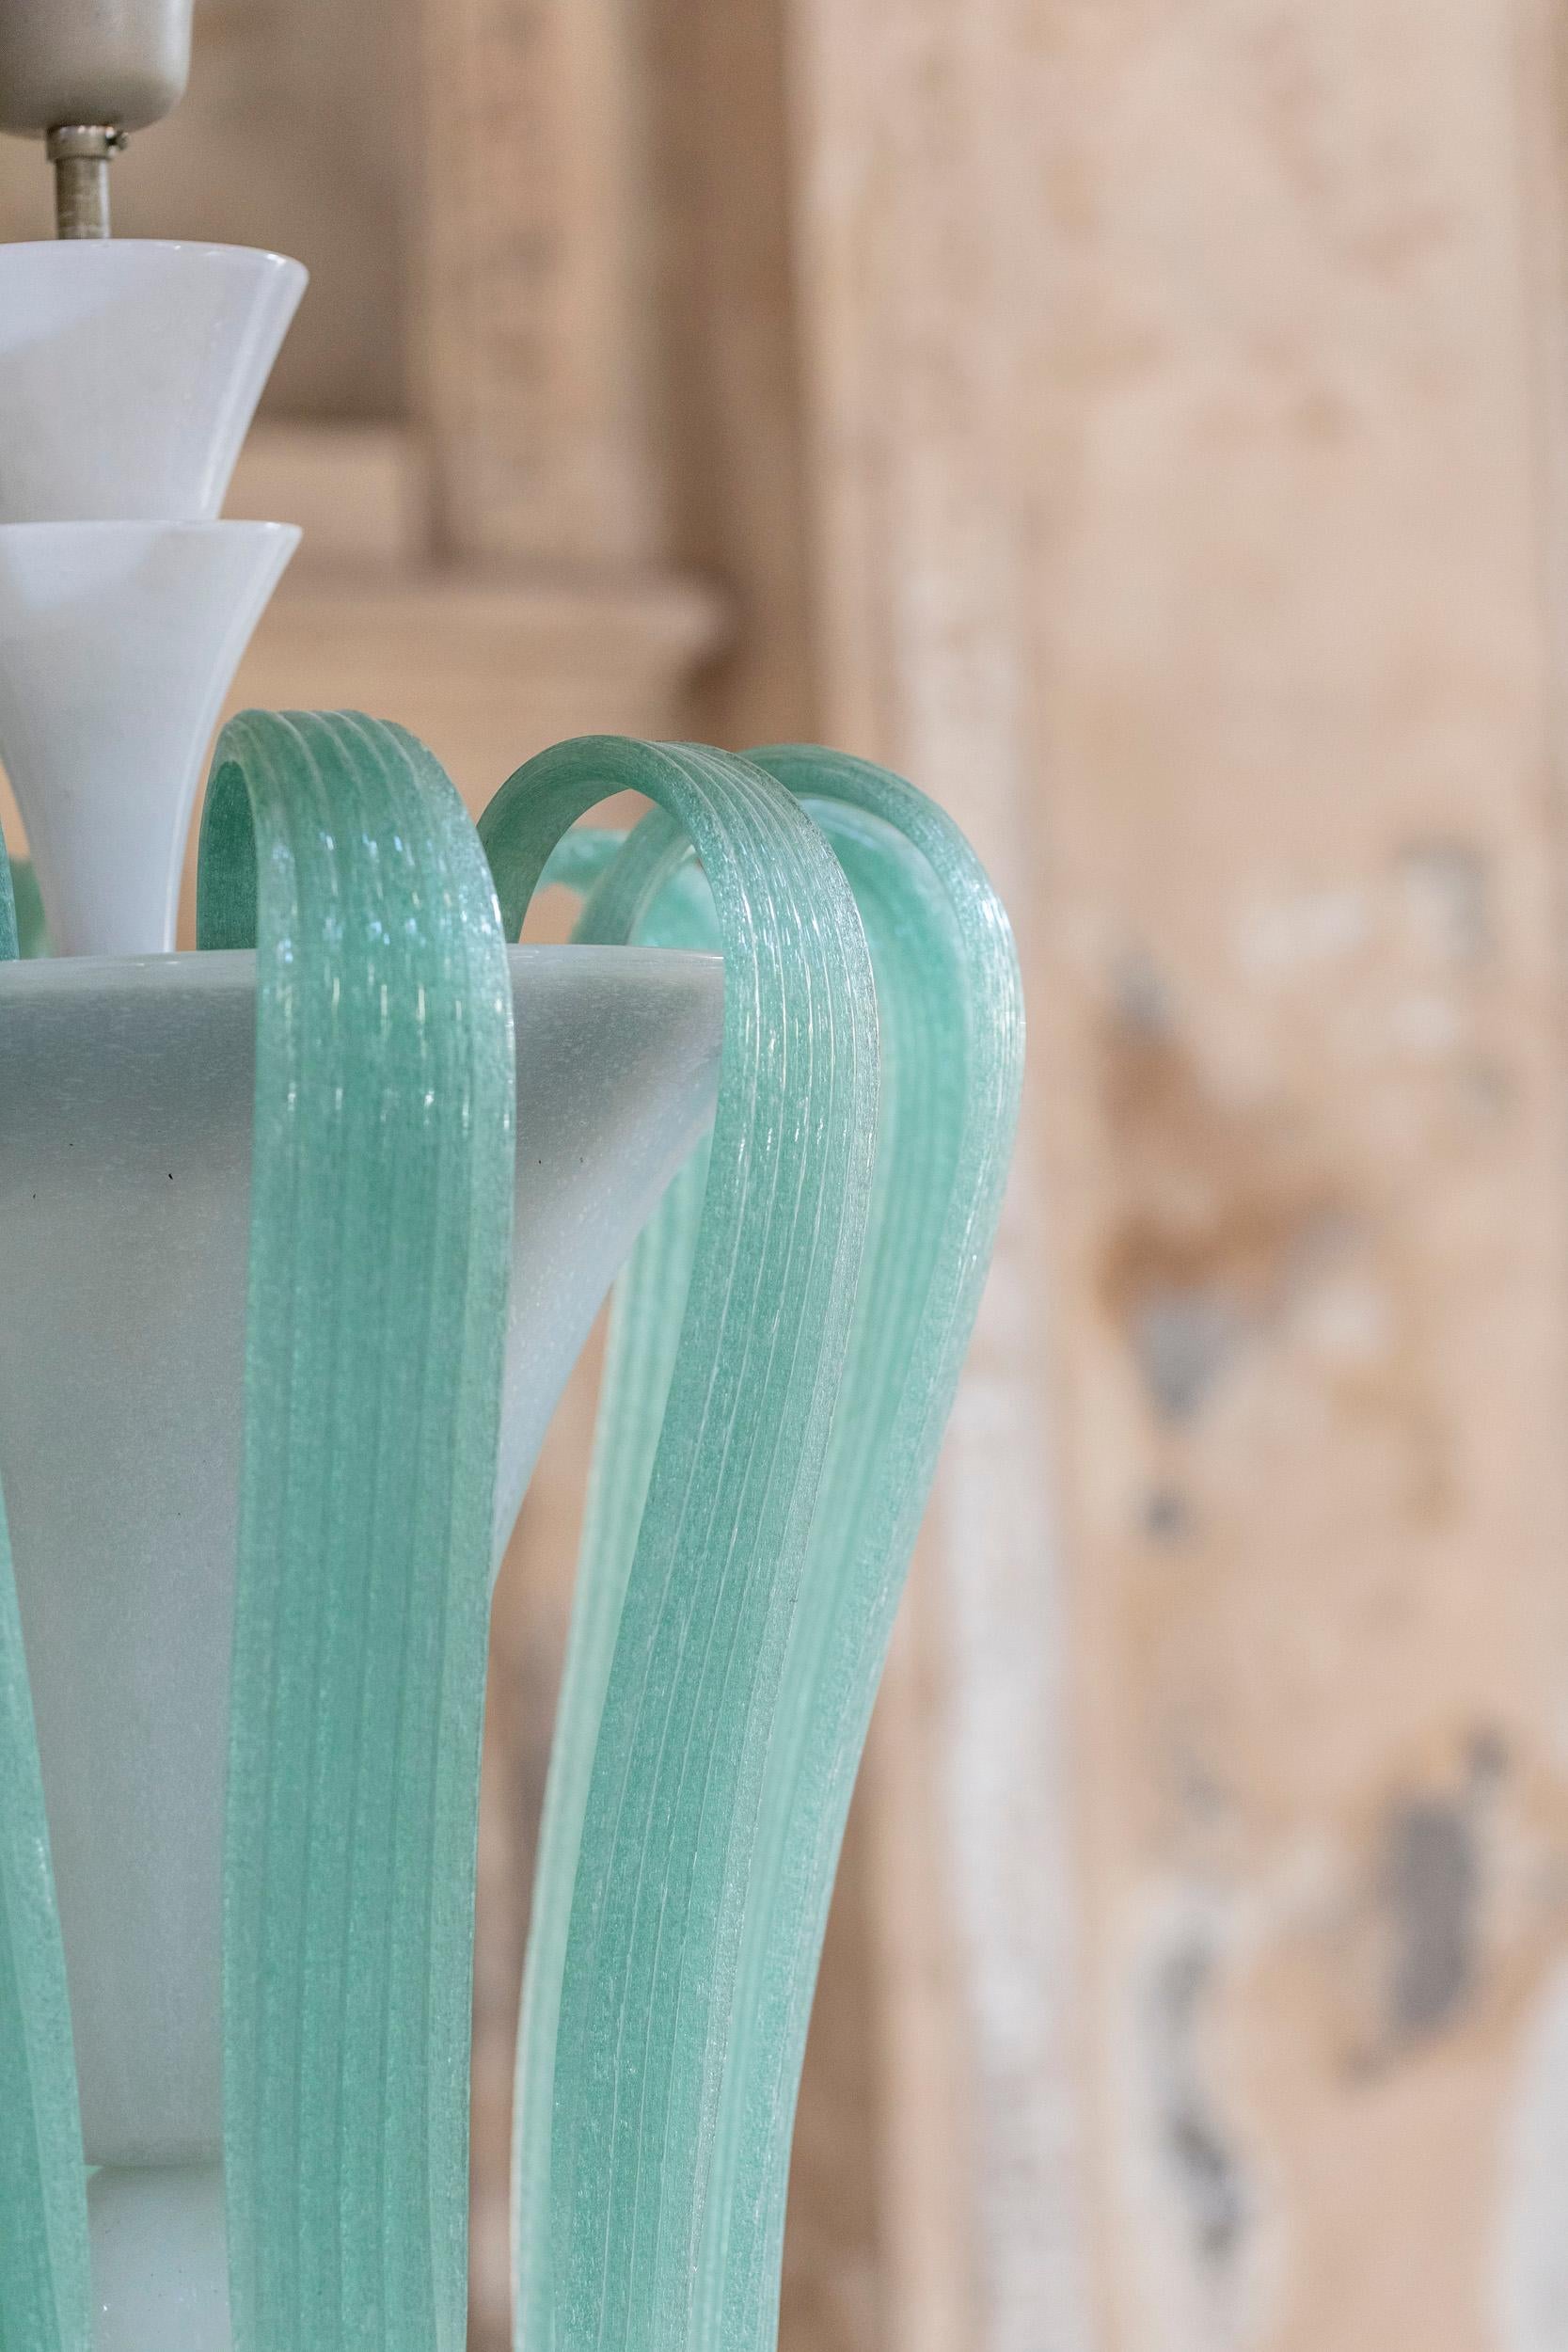 Italian Murano Glass Chandelier Attributed to Tomaso Buzzi for Venini